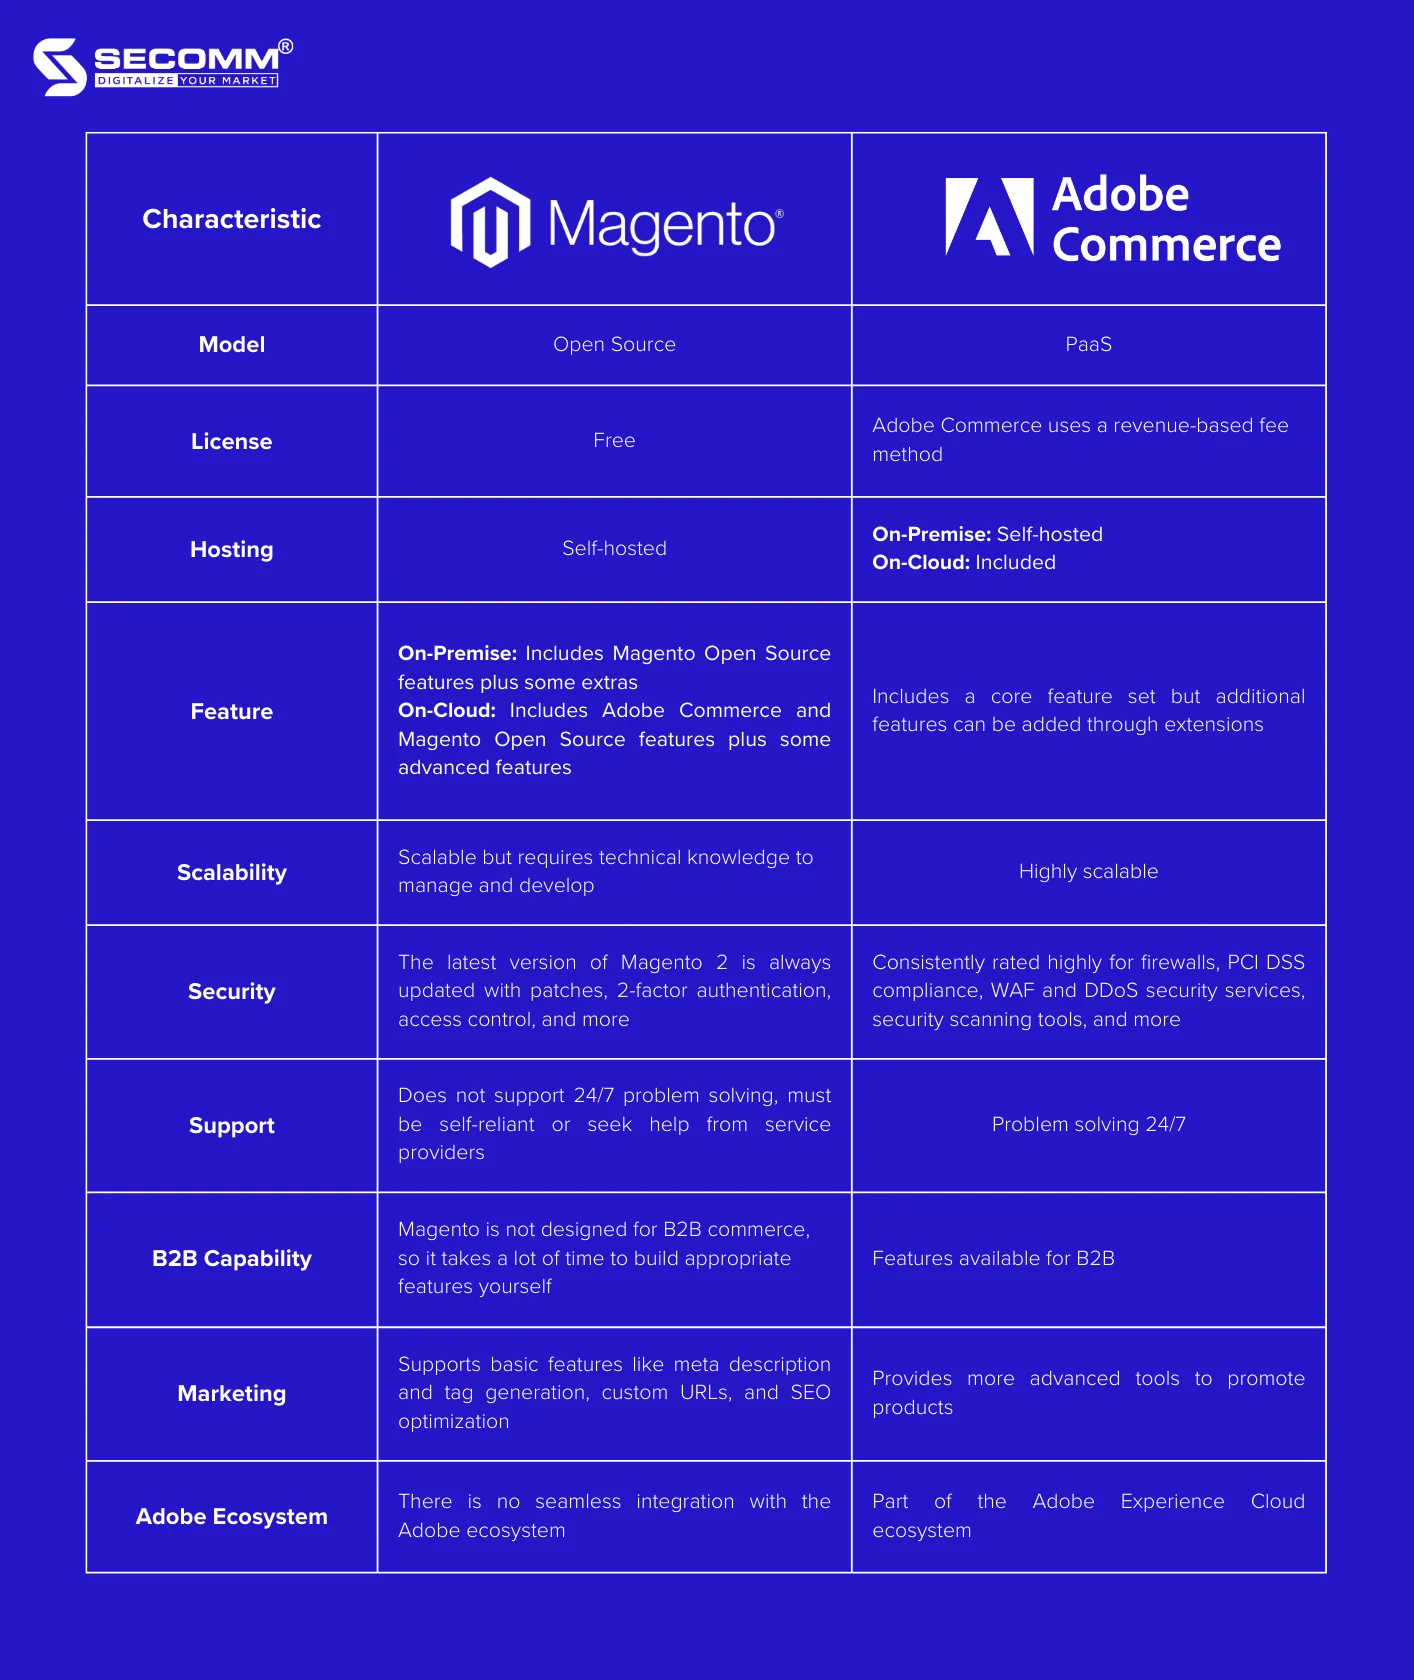 Adobe Commerce vs Magento Noteworthy Differences-Comparison between Magento vs Adobe Commerce